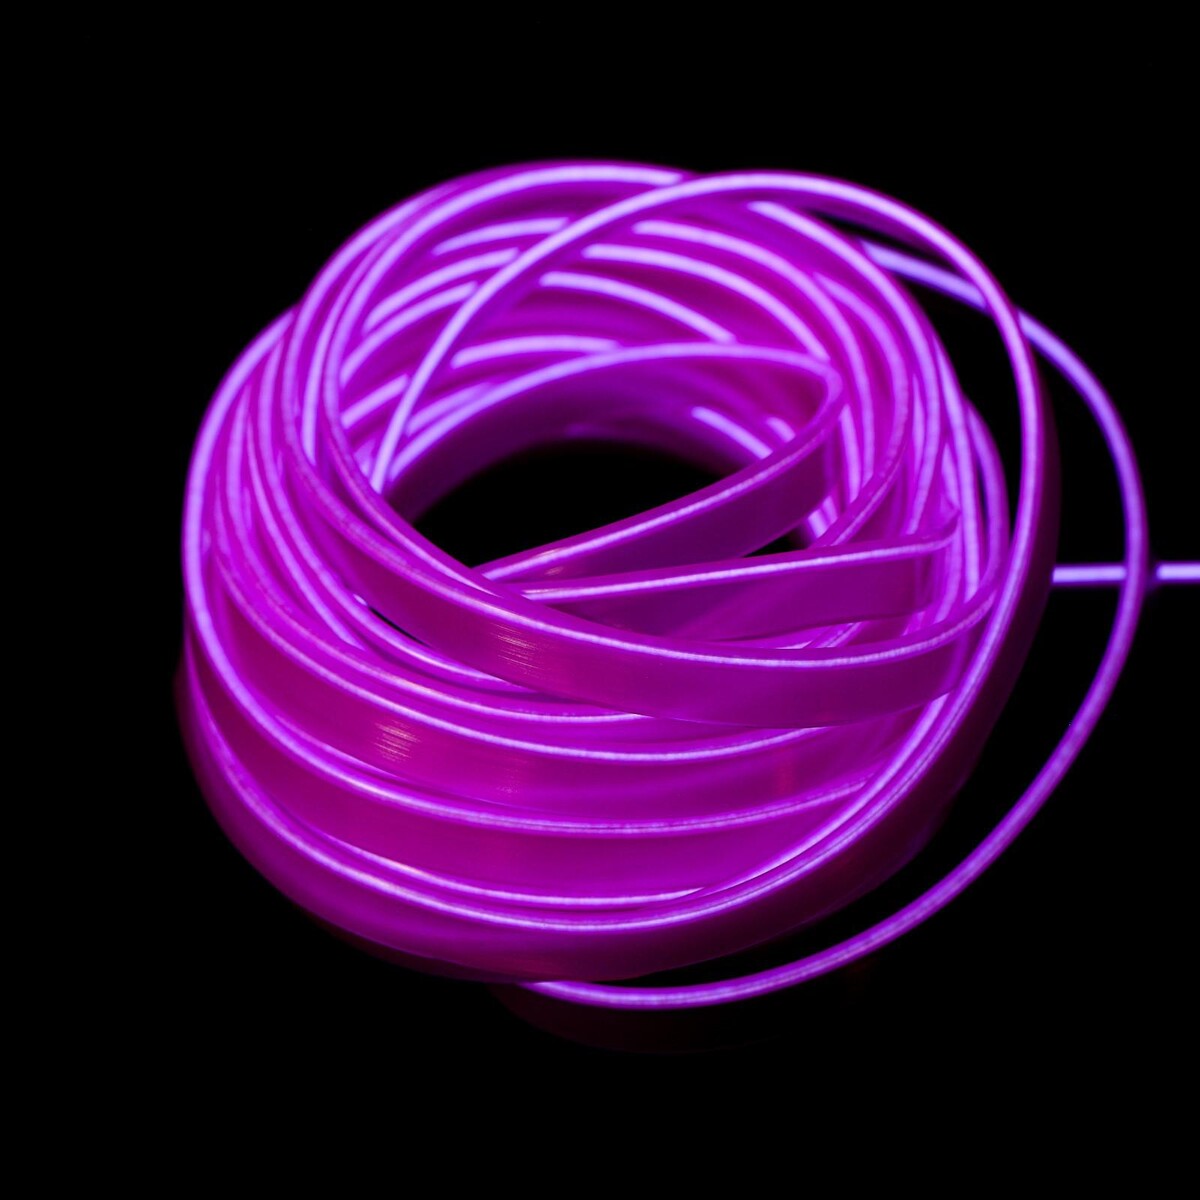 Неоновая нить cartage для подсветки салона, адаптер питания 12 в, 7 м, фиолетовый комплект верхней одежды nikastyle 7м2423 коралловый неон фиолетовый 122